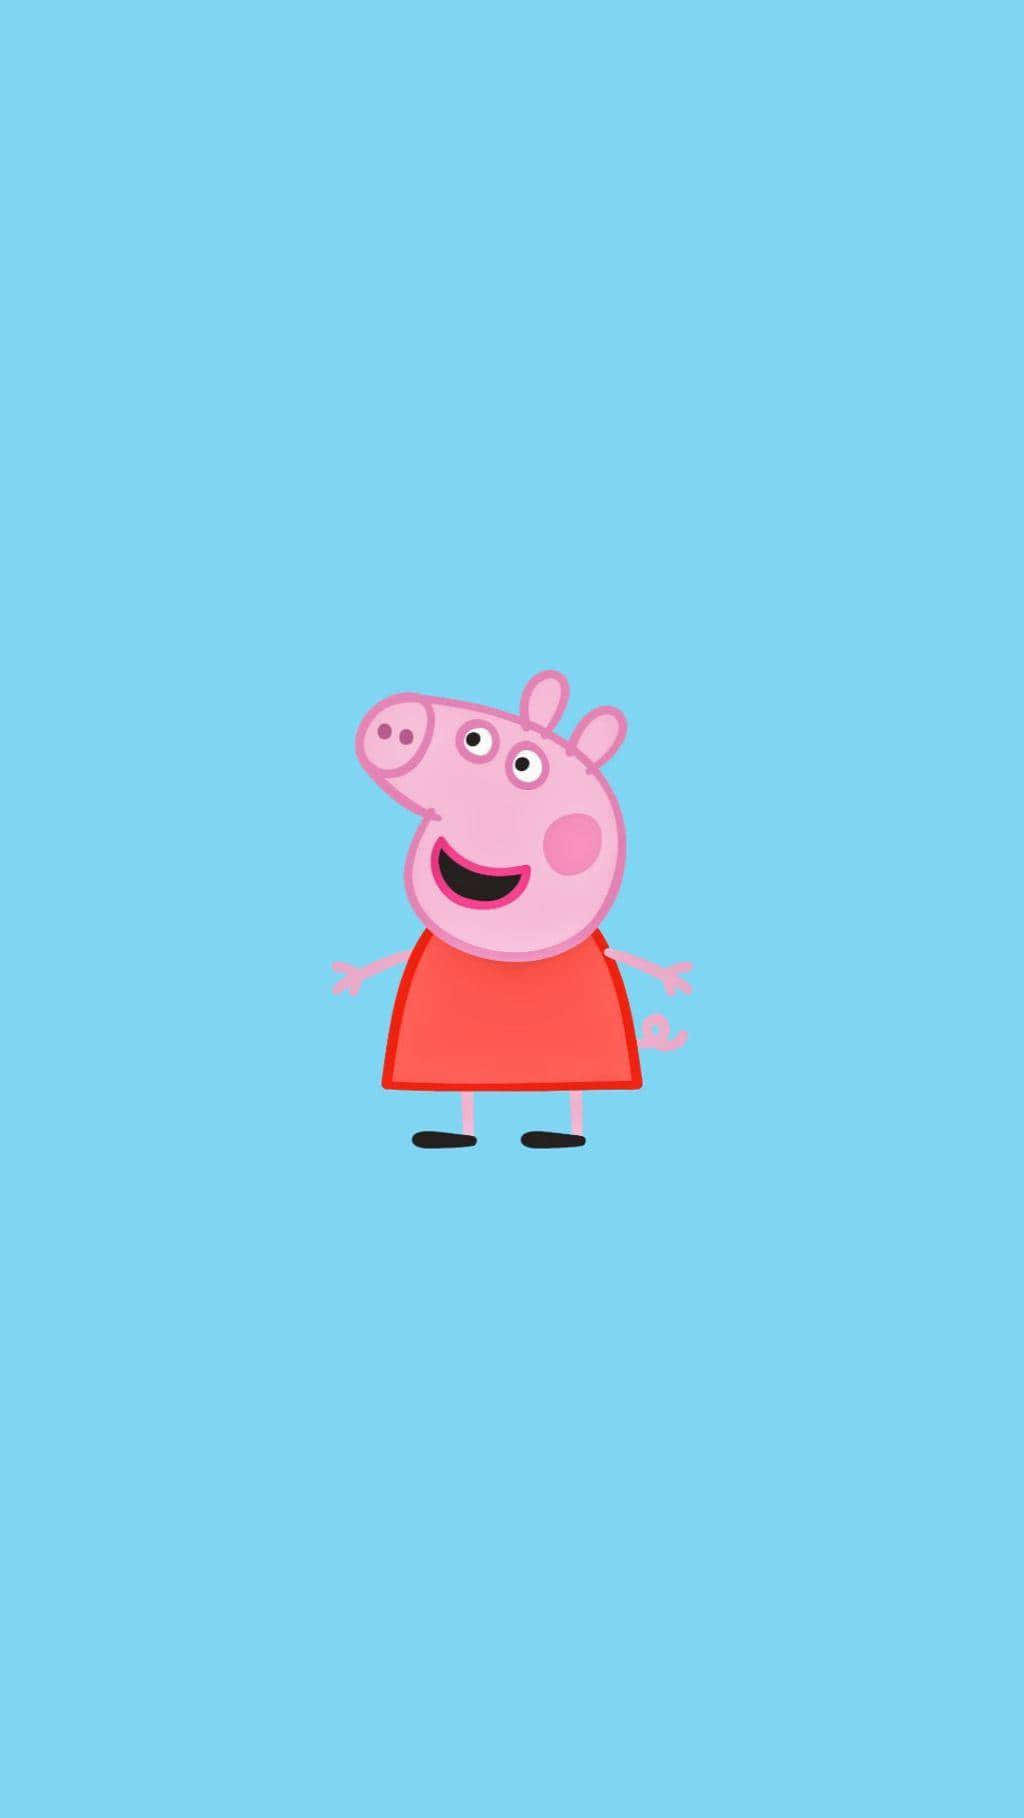 Imágenesde Peppa Pig